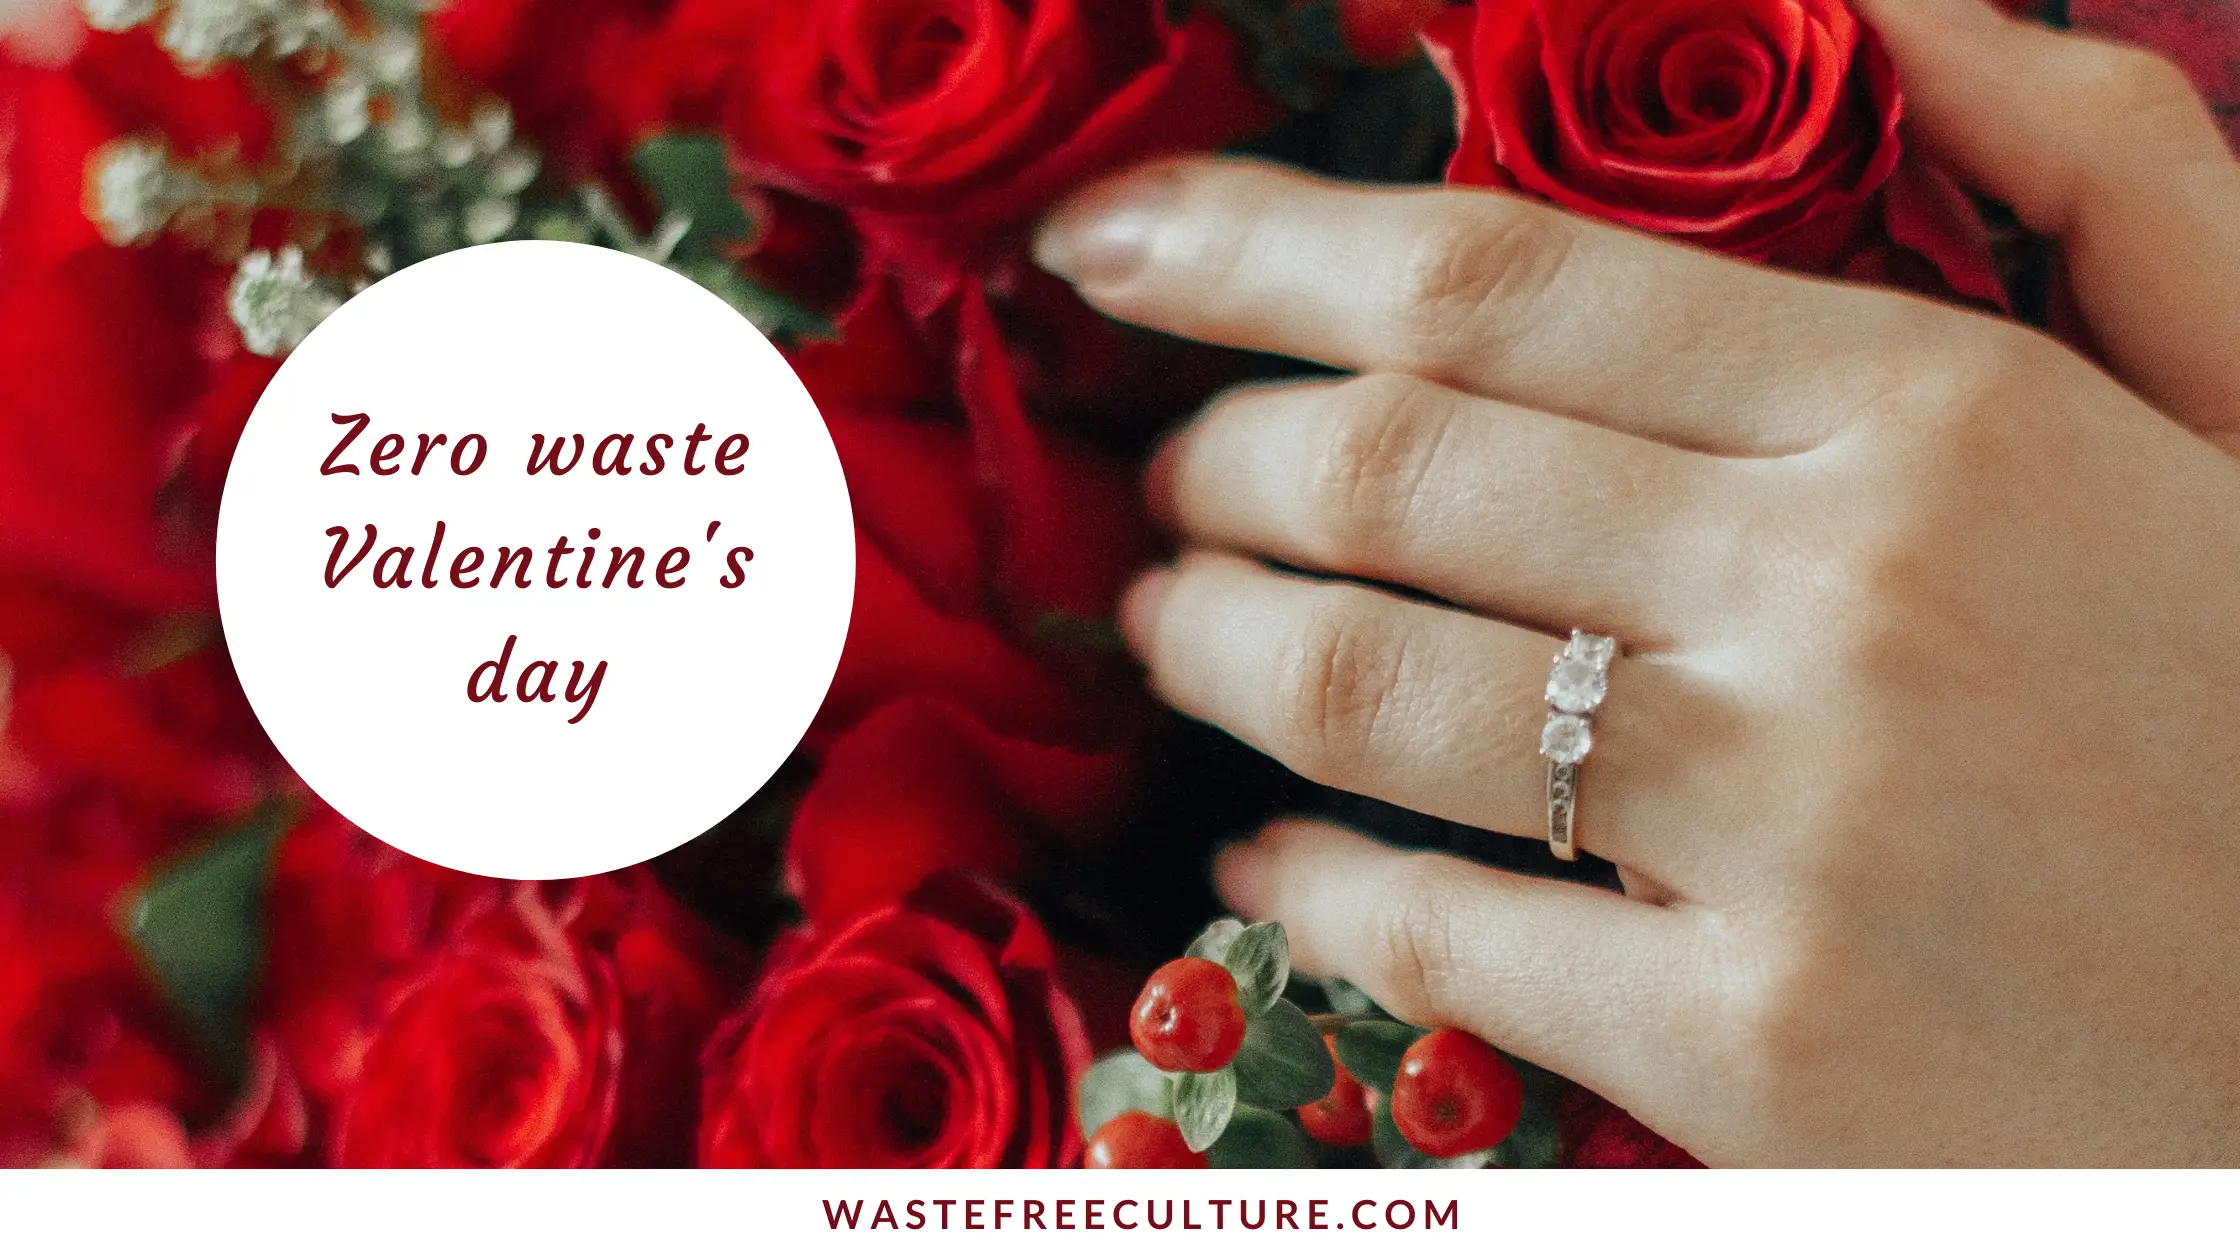 Zero waste Valentine's day